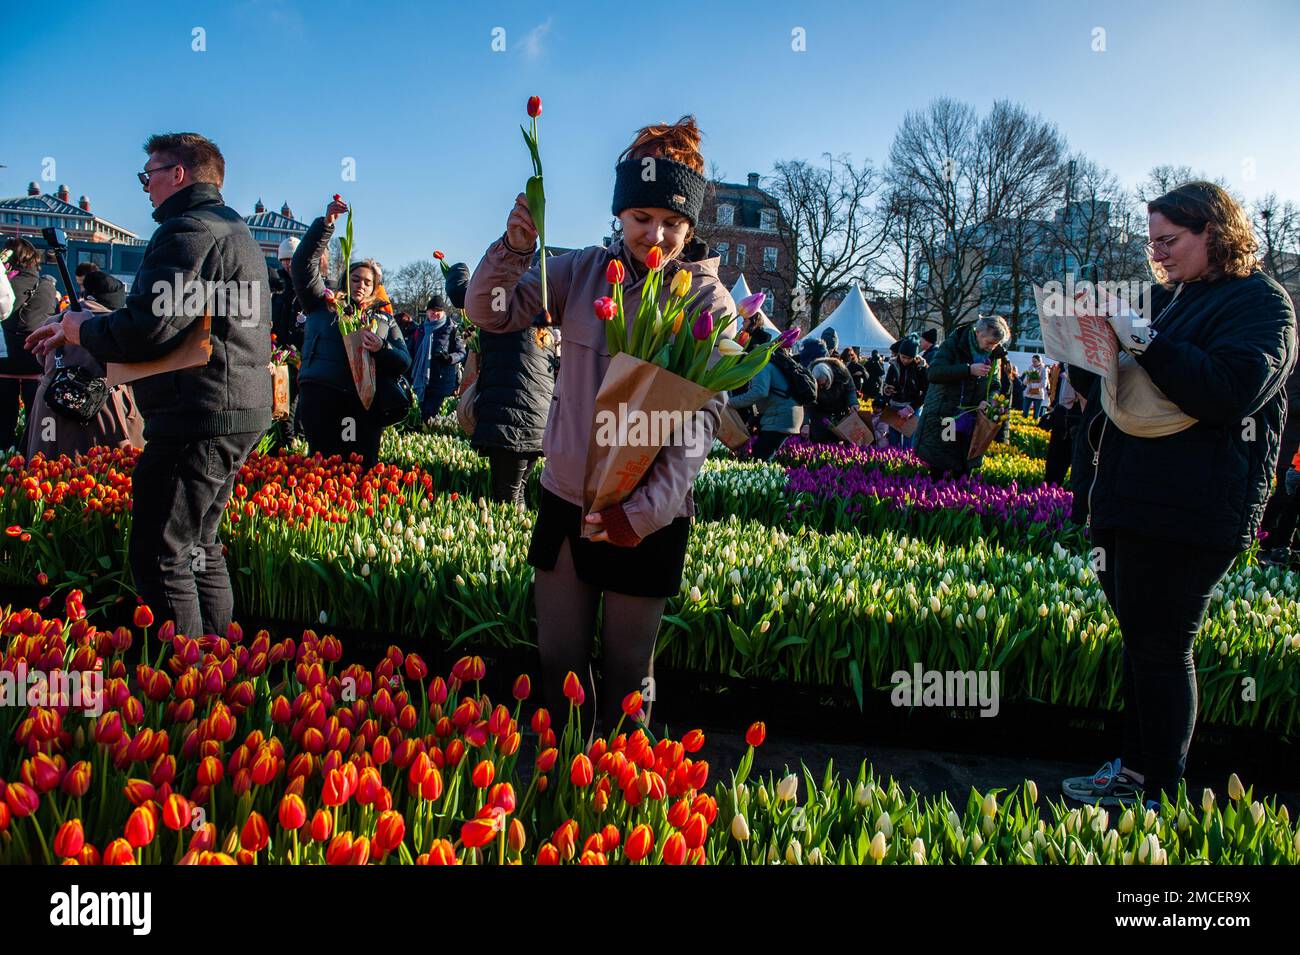 Une femme a vu mettre une autre tulipe dans son sac en papier. Chaque année, le samedi 3rd janvier, la Journée nationale des tulipes est célébrée à Amsterdam. Les producteurs de tulipes néerlandais ont construit un immense jardin de cueillette avec plus de 200 000 tulipes colorées au Museumplein à Amsterdam. Les visiteurs sont autorisés à cueillir des tulipes gratuitement. L'événement a été ouvert par la championne olympique de patinage, Irene Schouten. Avant l'ouverture, elle a baptisé une nouvelle tulipe: Tulipa 'Dutch Pearl' comme référence au monde - célèbre tableau 'la fille avec une boucle d'oreille de perle' par Johannes Vermeer. Banque D'Images